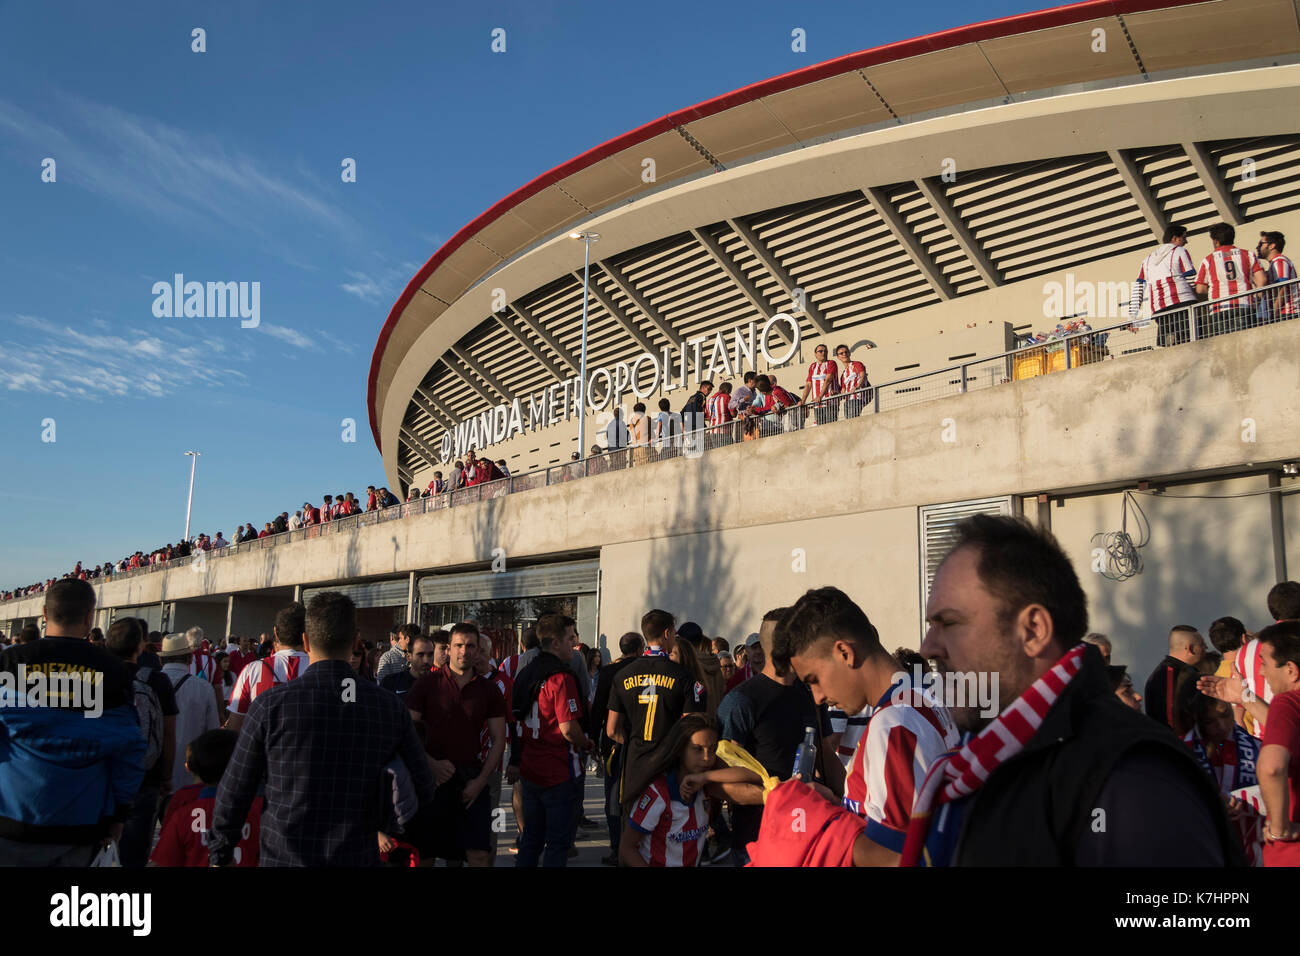 Madrid, Espagne. 17 Septembre, 2017. LaLiga concordance entre l'Atletico de Madrid et Malaga CF au stade Metropolitano Wanda le jour de son premier match officiel. © ABEL F. ROS/Alamy Live News Banque D'Images